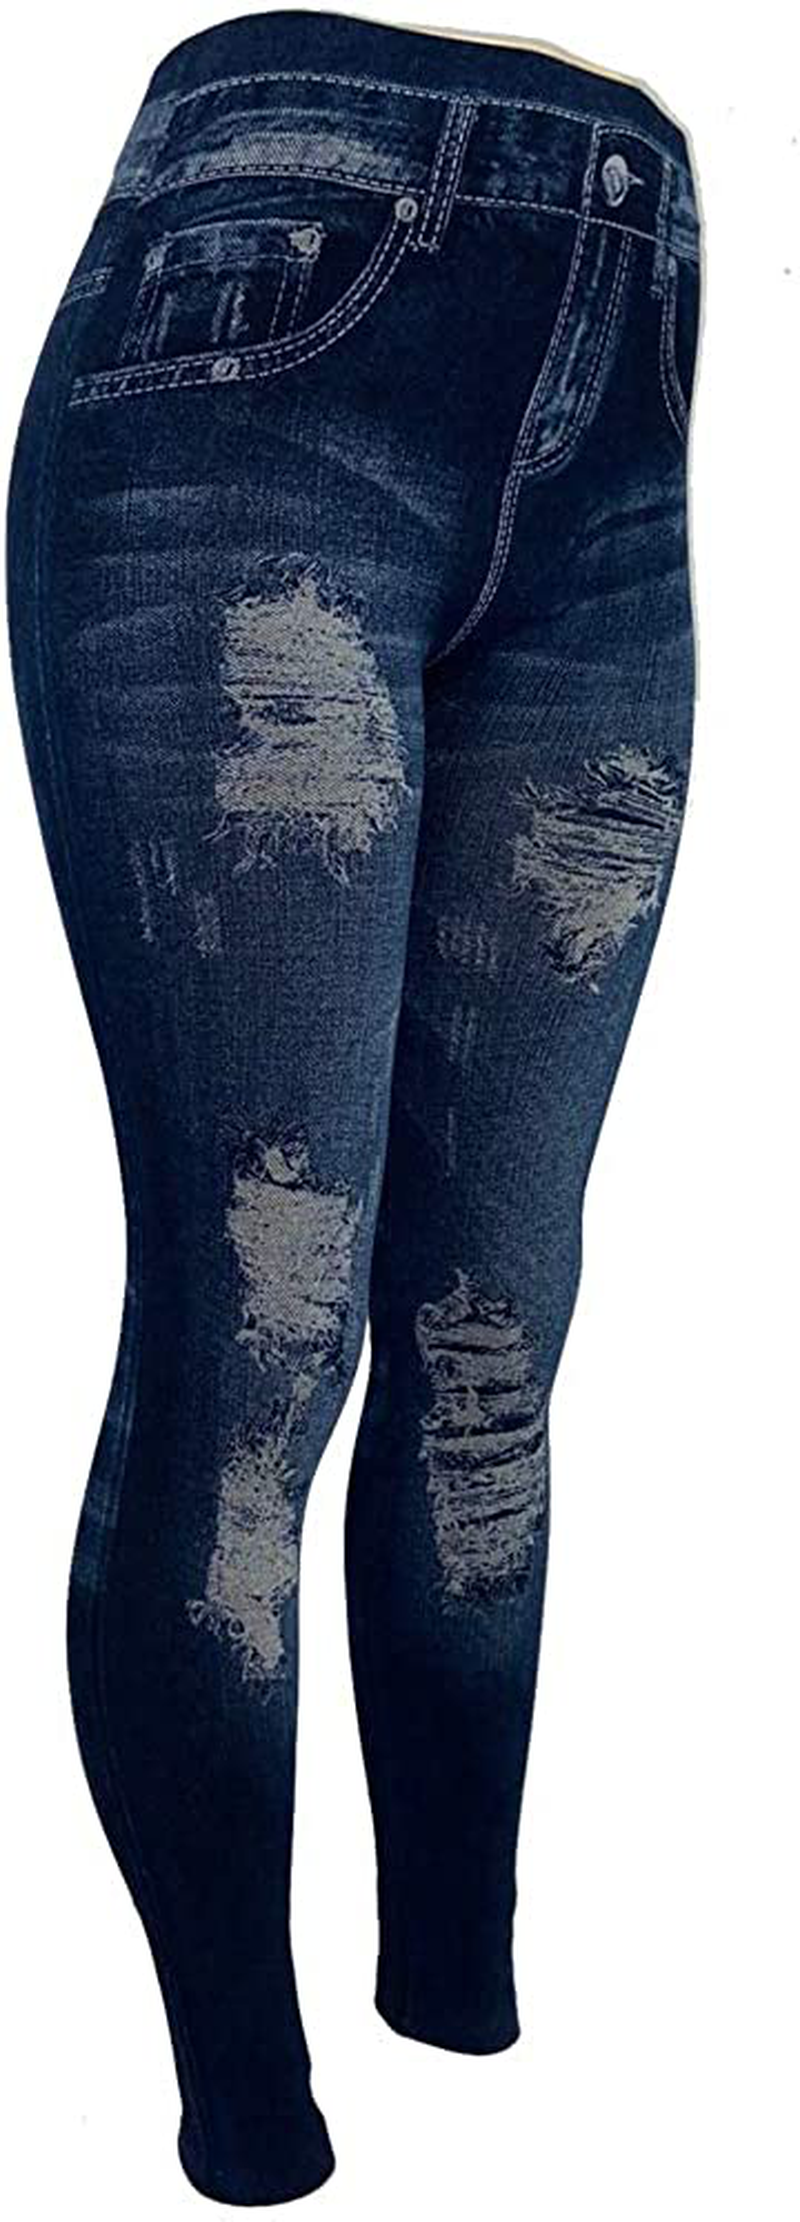 CLOYA Women's Denim Print Fake Jeans Seamless Fleece Lined Leggings, Full Length